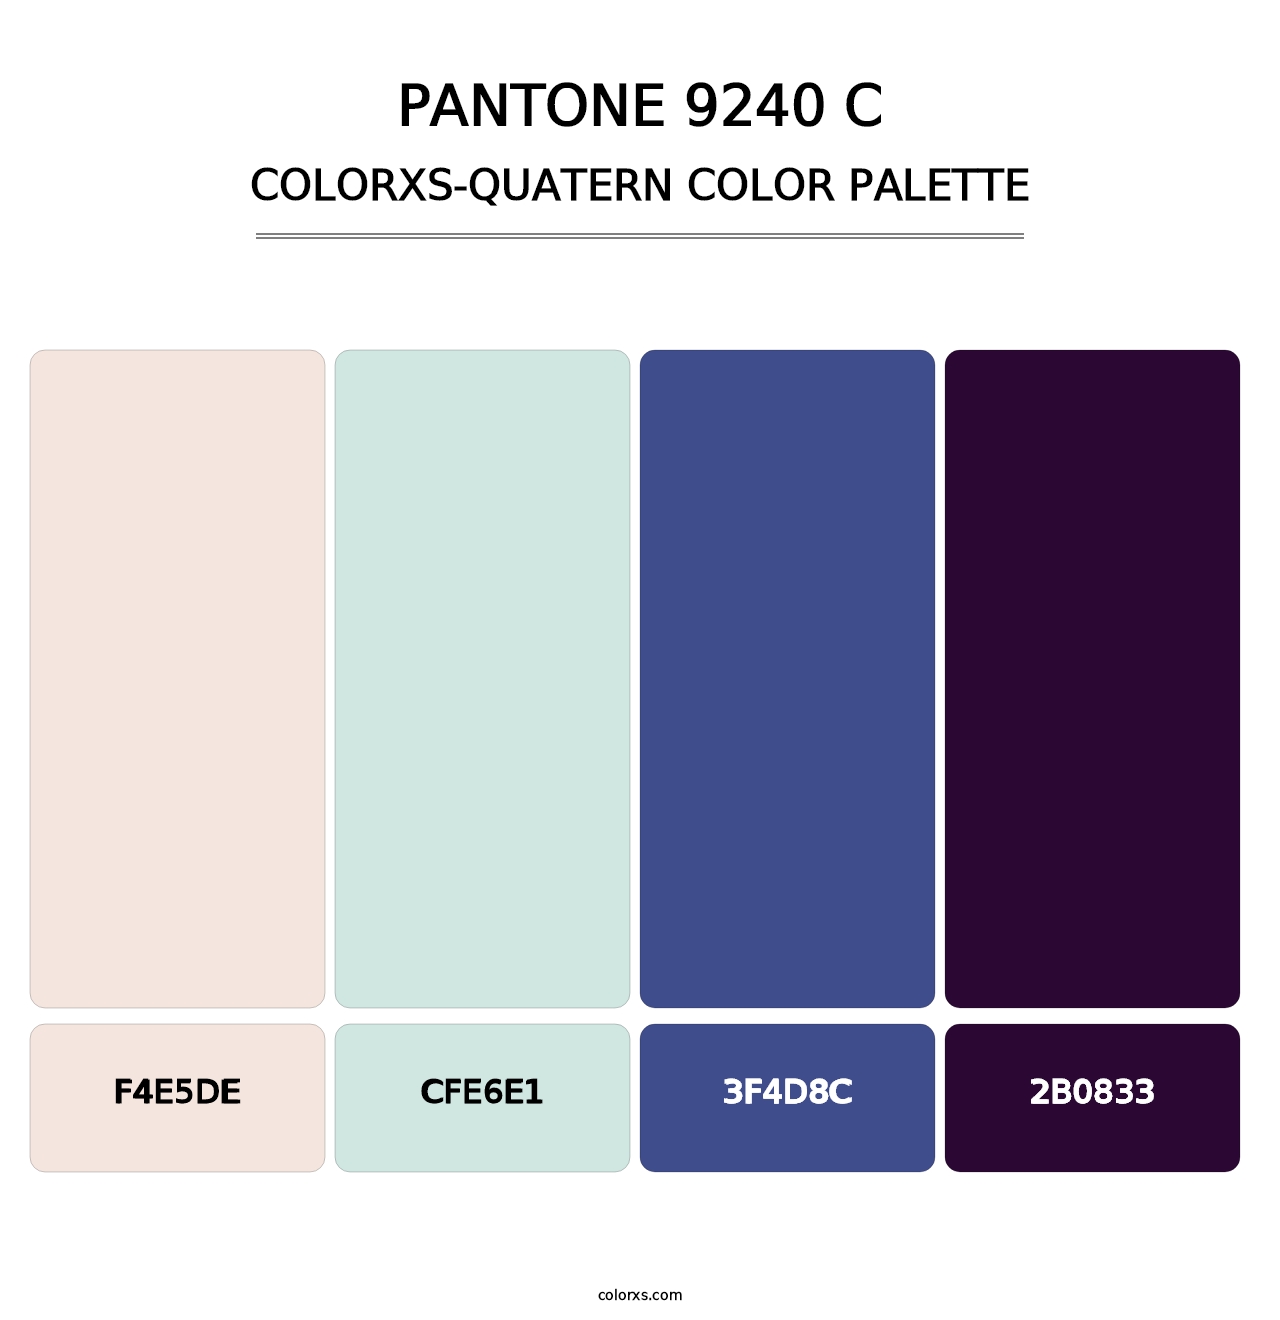 PANTONE 9240 C - Colorxs Quatern Palette